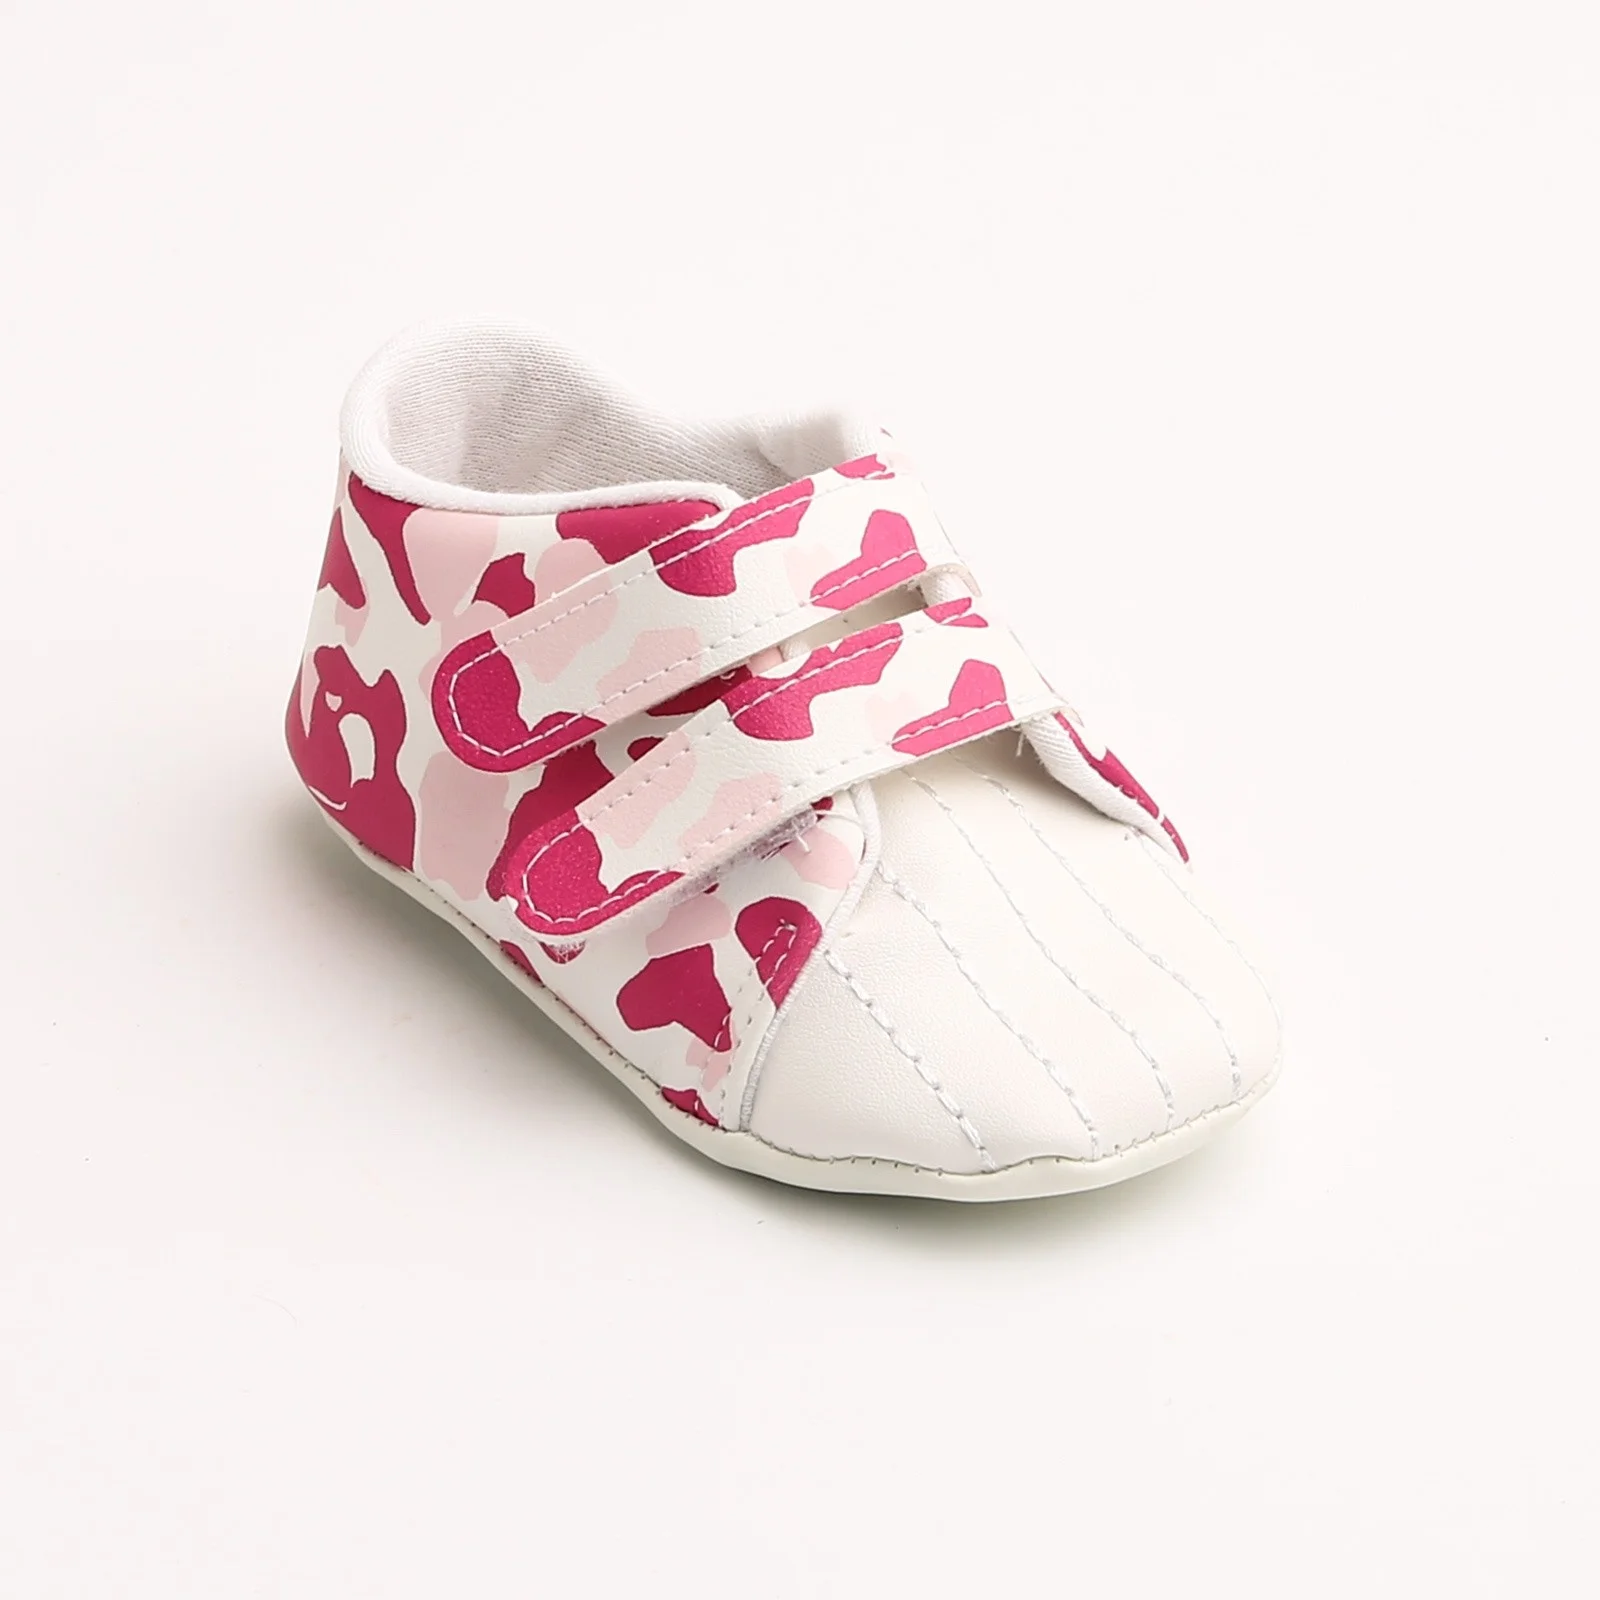 Ebebek первый шаг детские ботинки обувь для девочек и мальчиков - Цвет: Фуксия